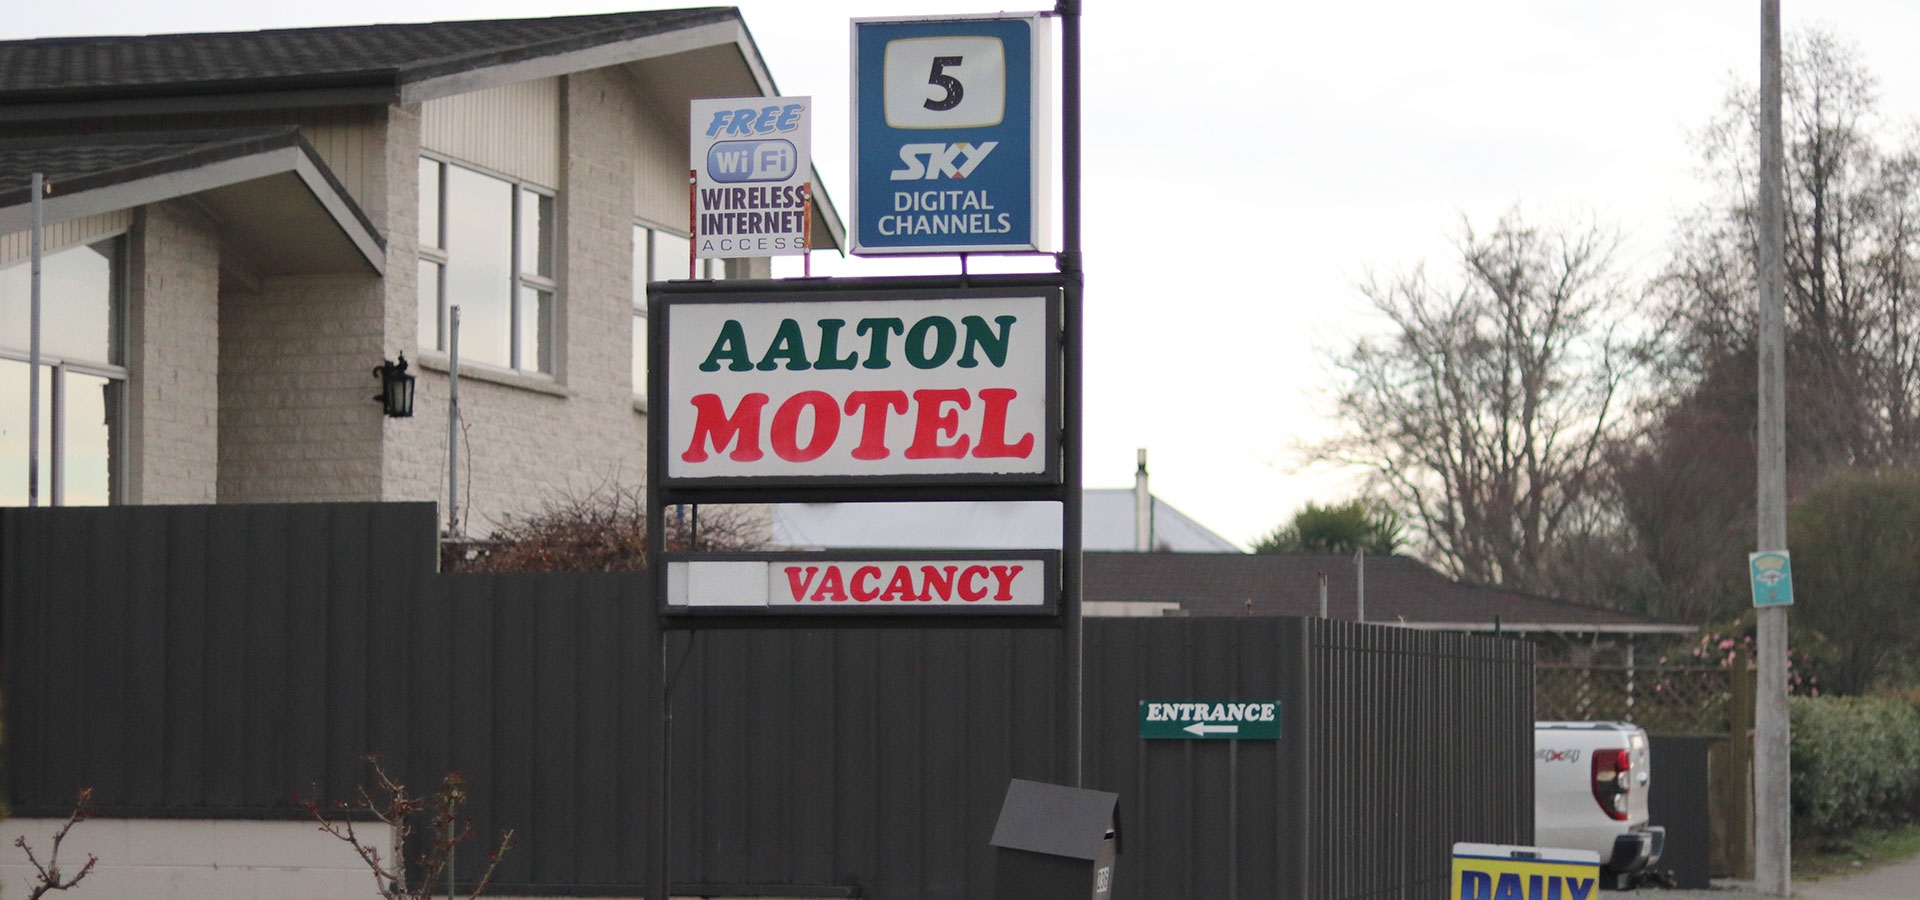 Aalton Motel